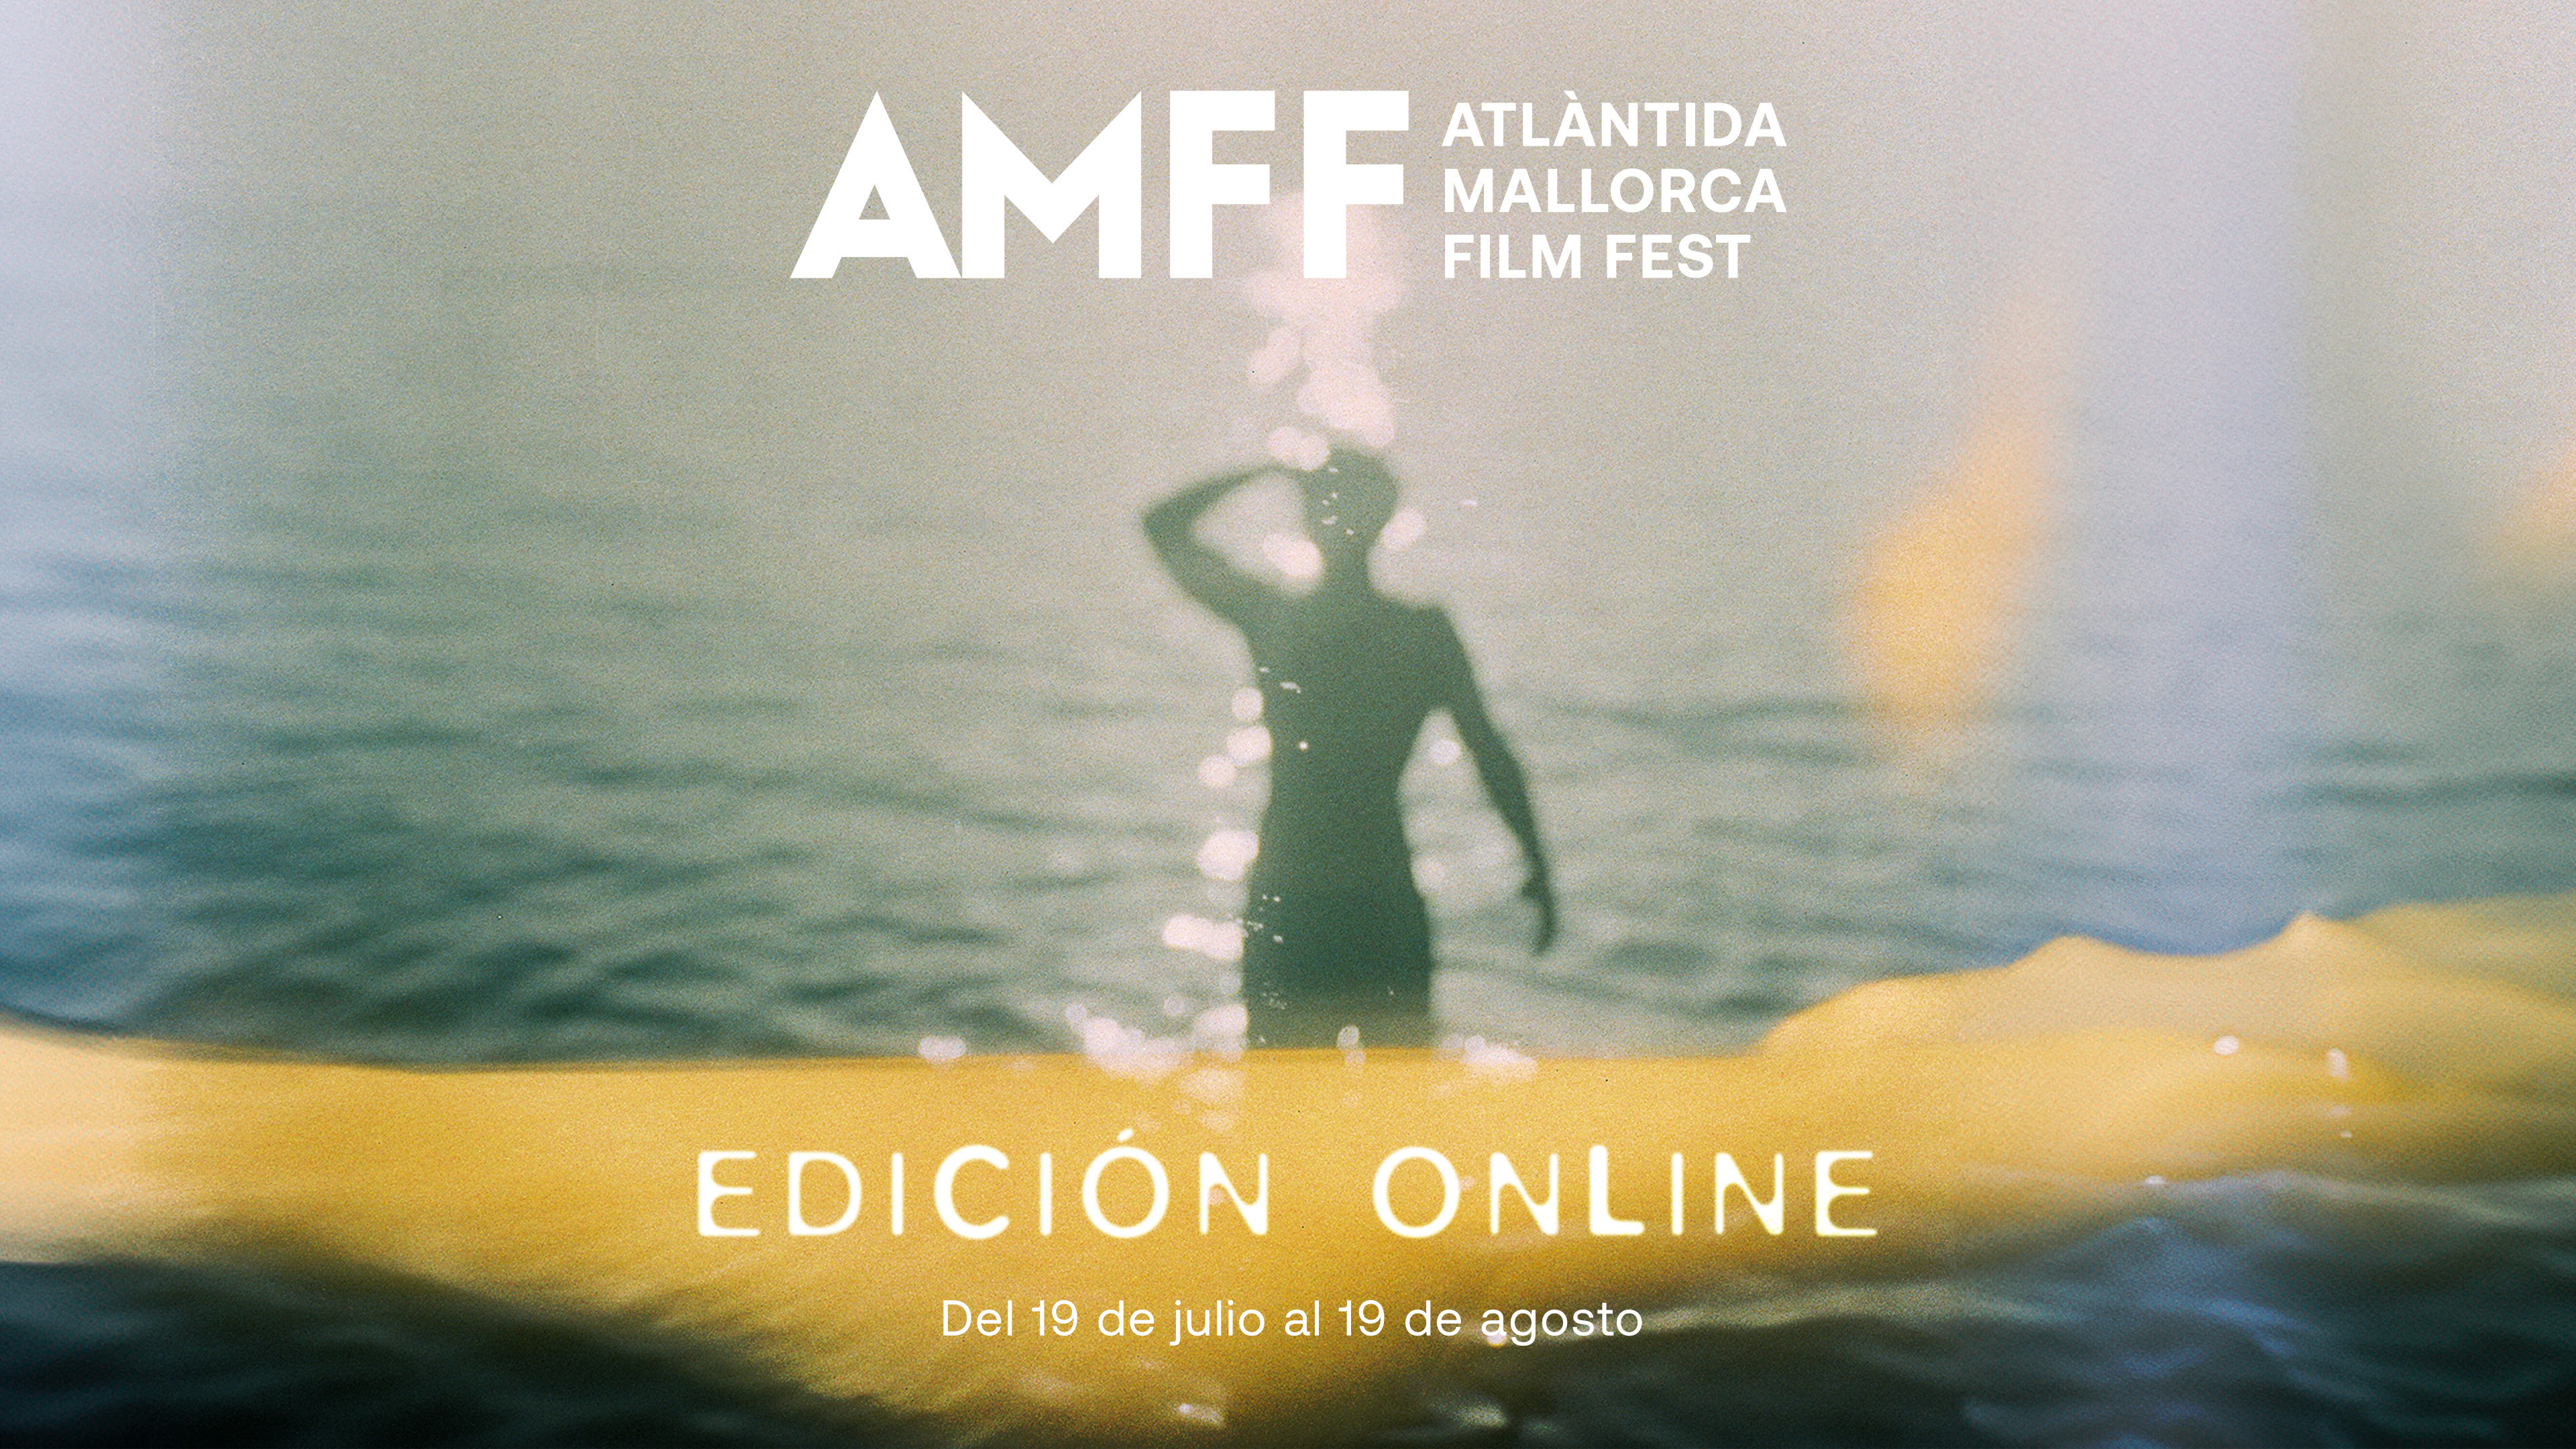  Steve McQueen, Radu Jude, Joao Canijo y Michel Houellebecq, estrellas de la edición online de Atlàntida Mallorca Film Fest 